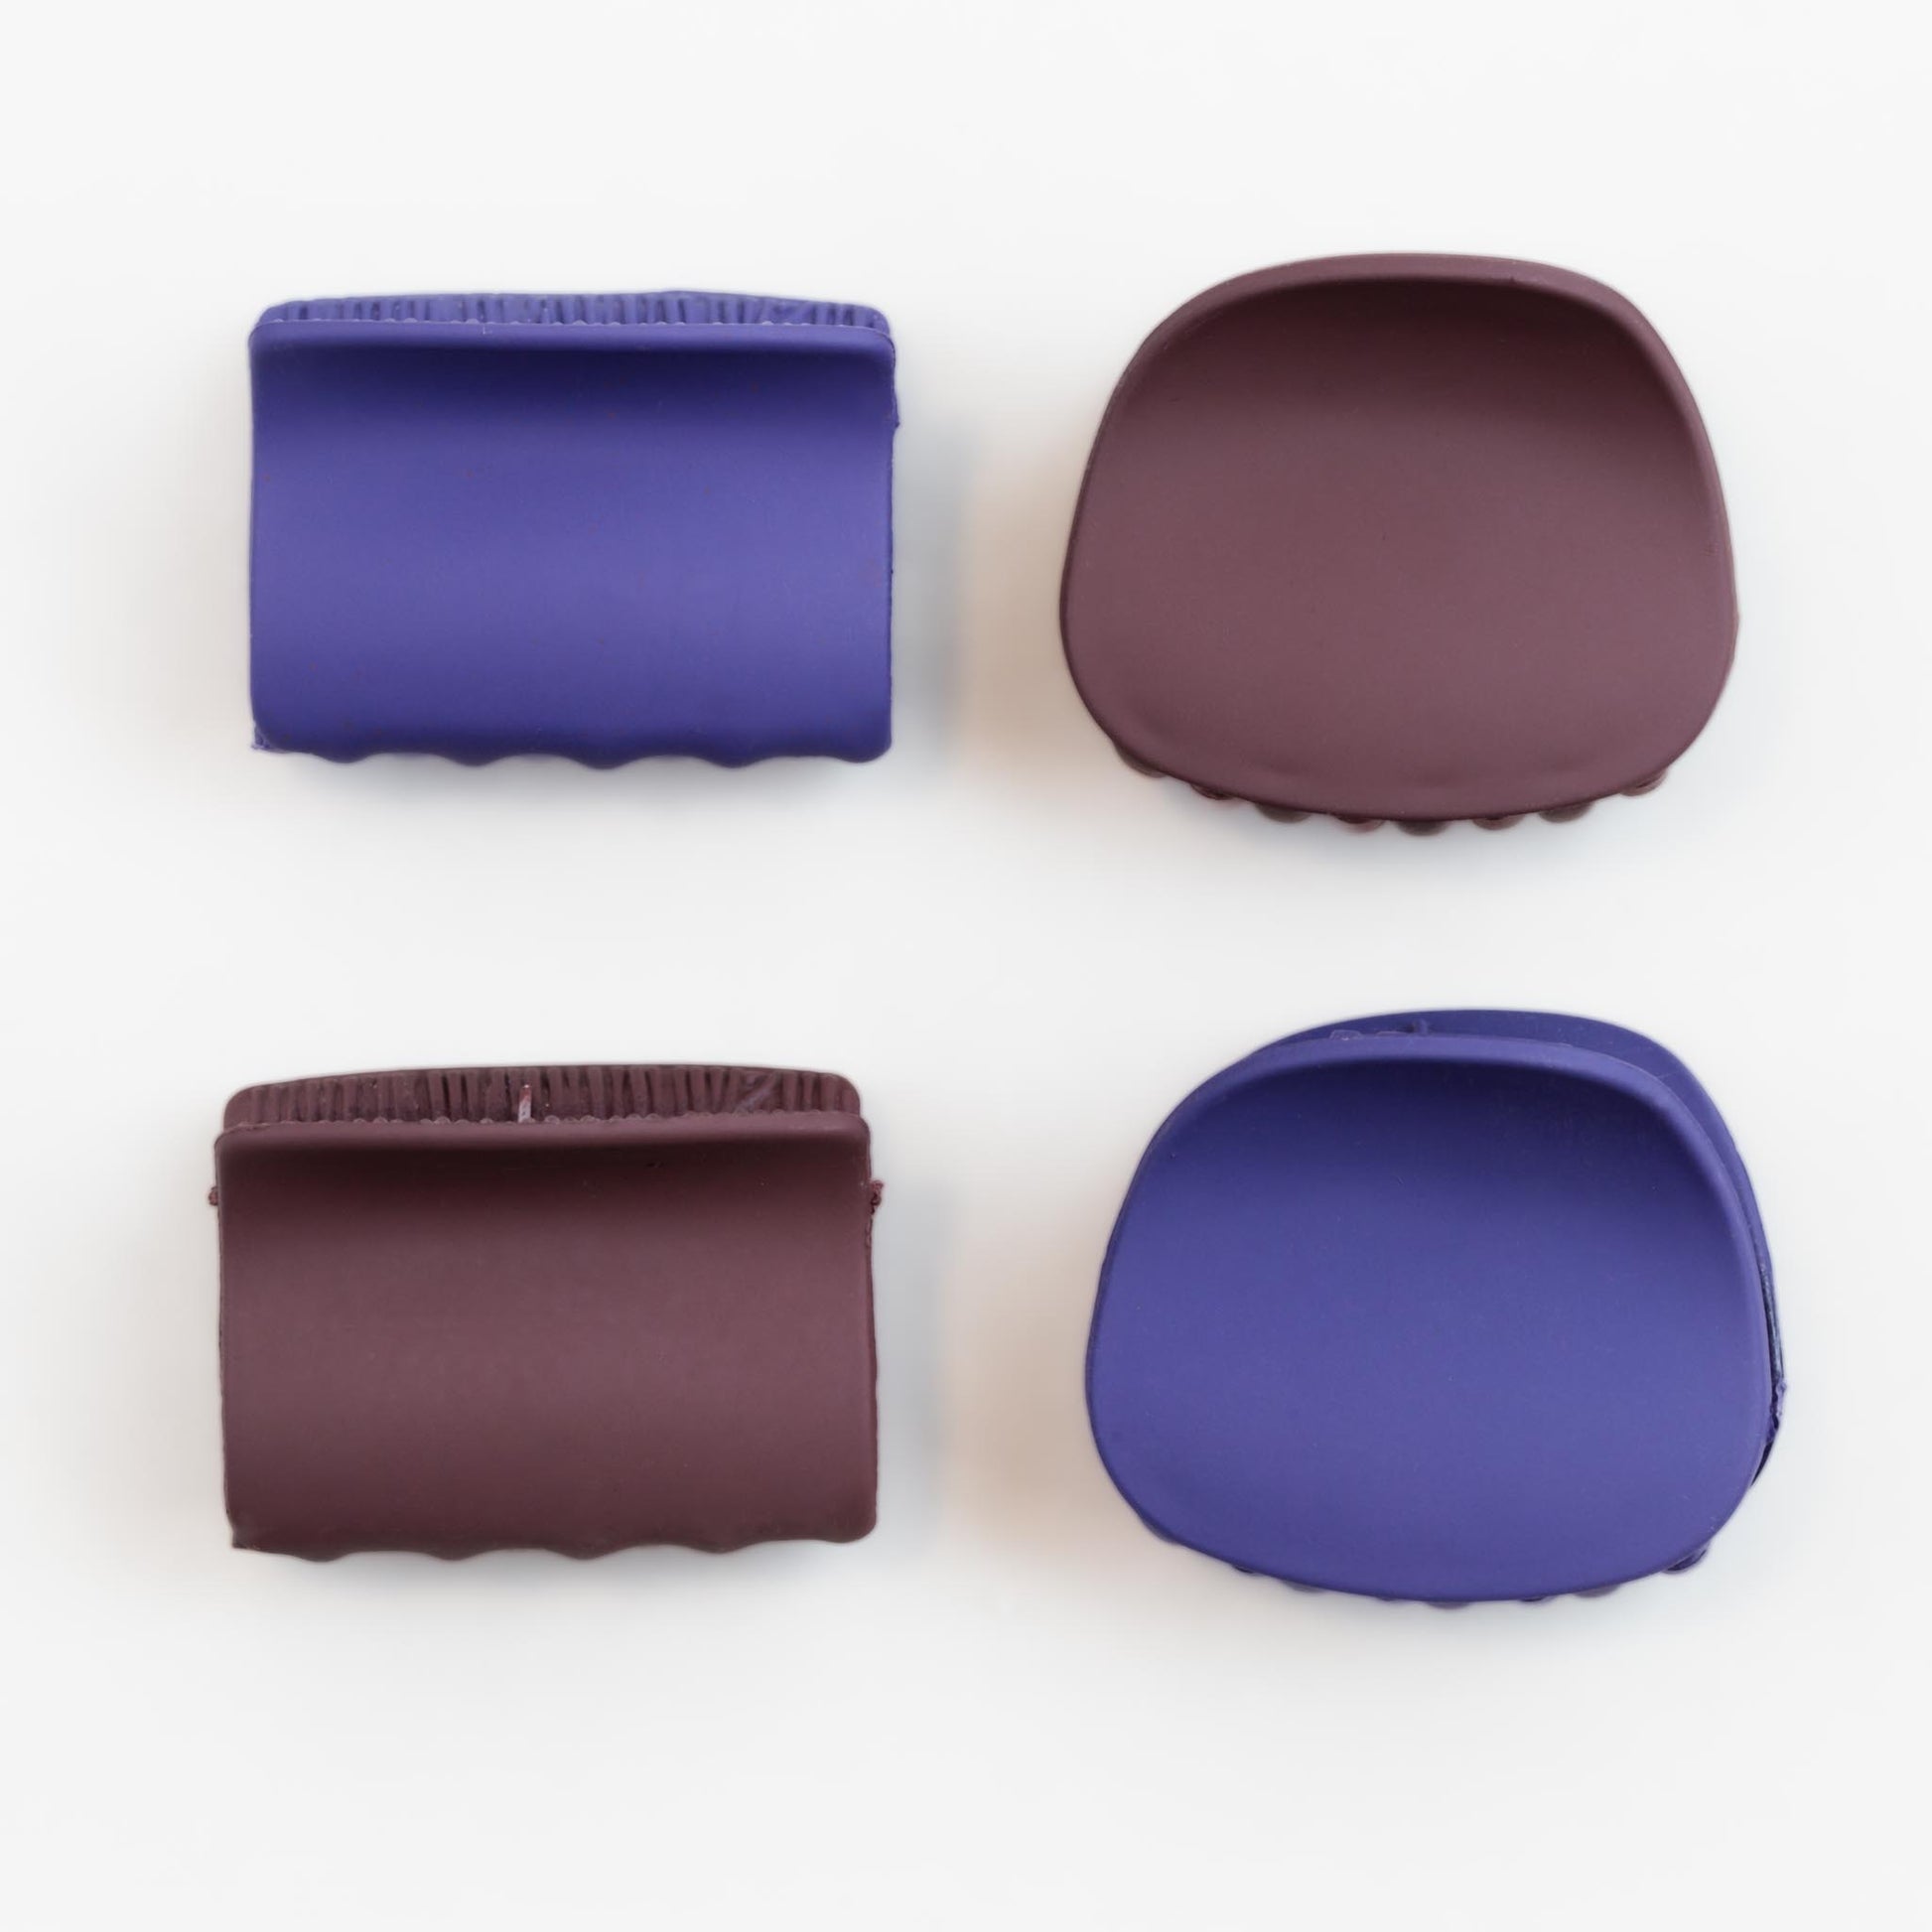 Clame de păr mici cu forme geometrice și textură de silicon, set 4 buc - Blueberry Mix